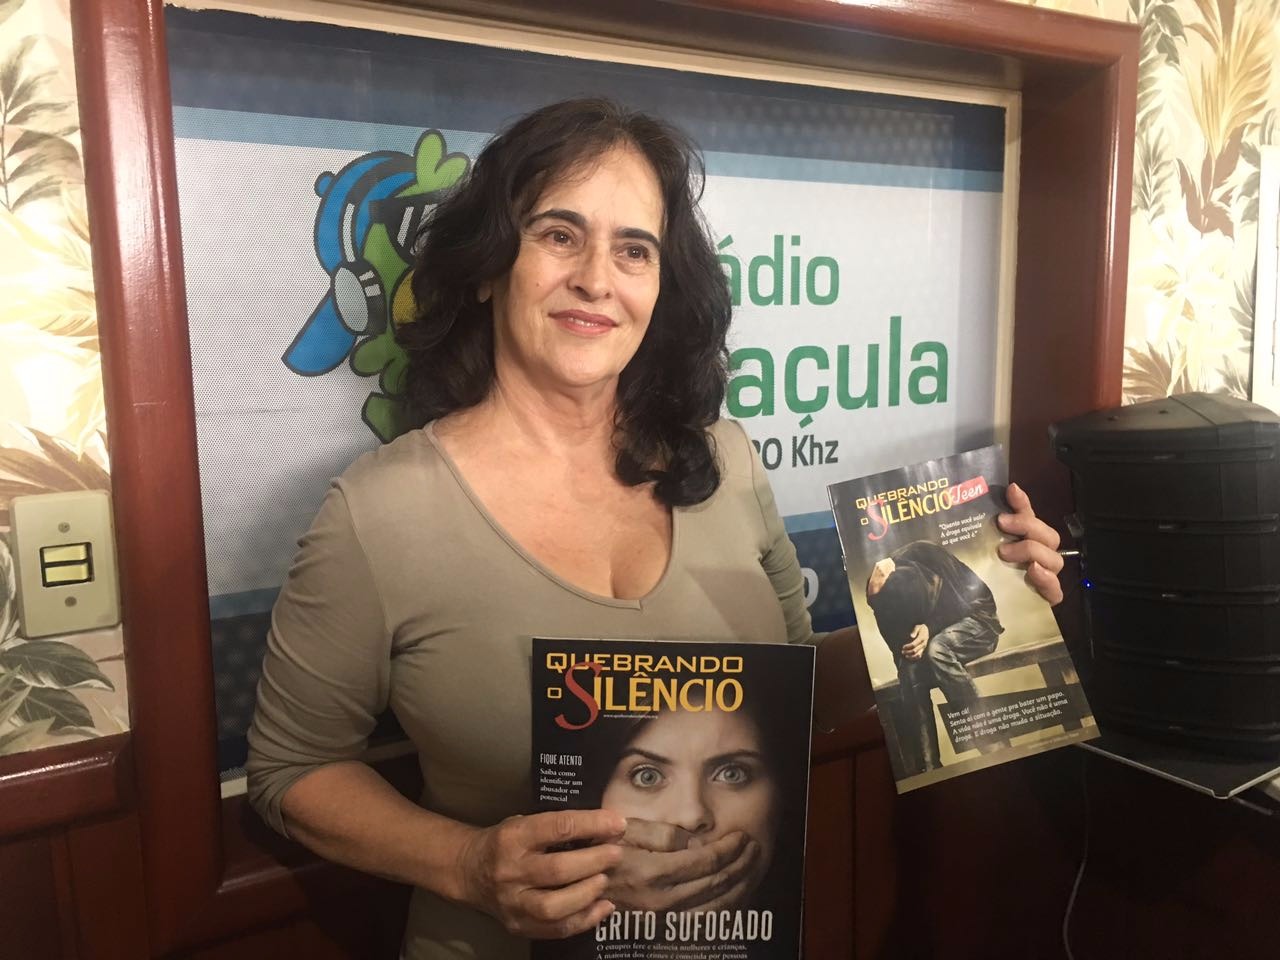 Marlene Durigan coordenadora do projeto Quebrando o Silêncio. (Foto: Caçula FM)